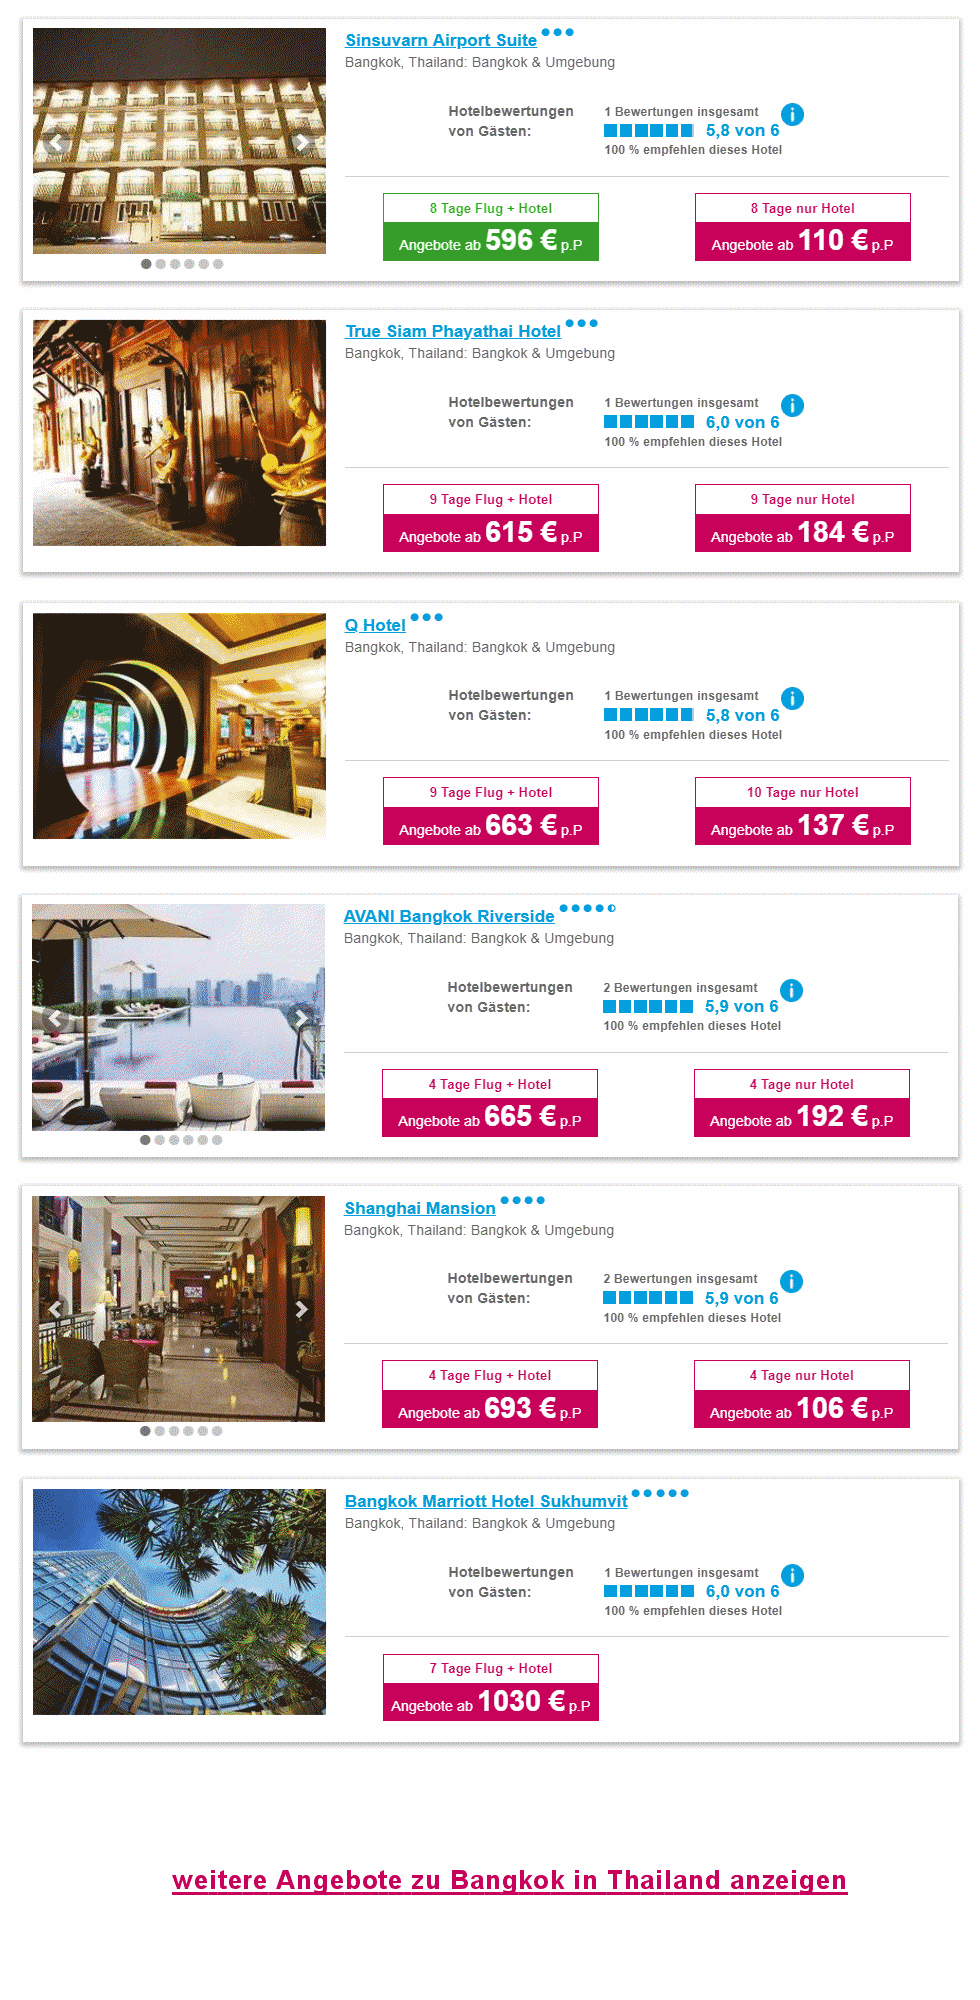 Angebotsliste Phuket Reisen 2022 / 2023 (Flug und Hotel)